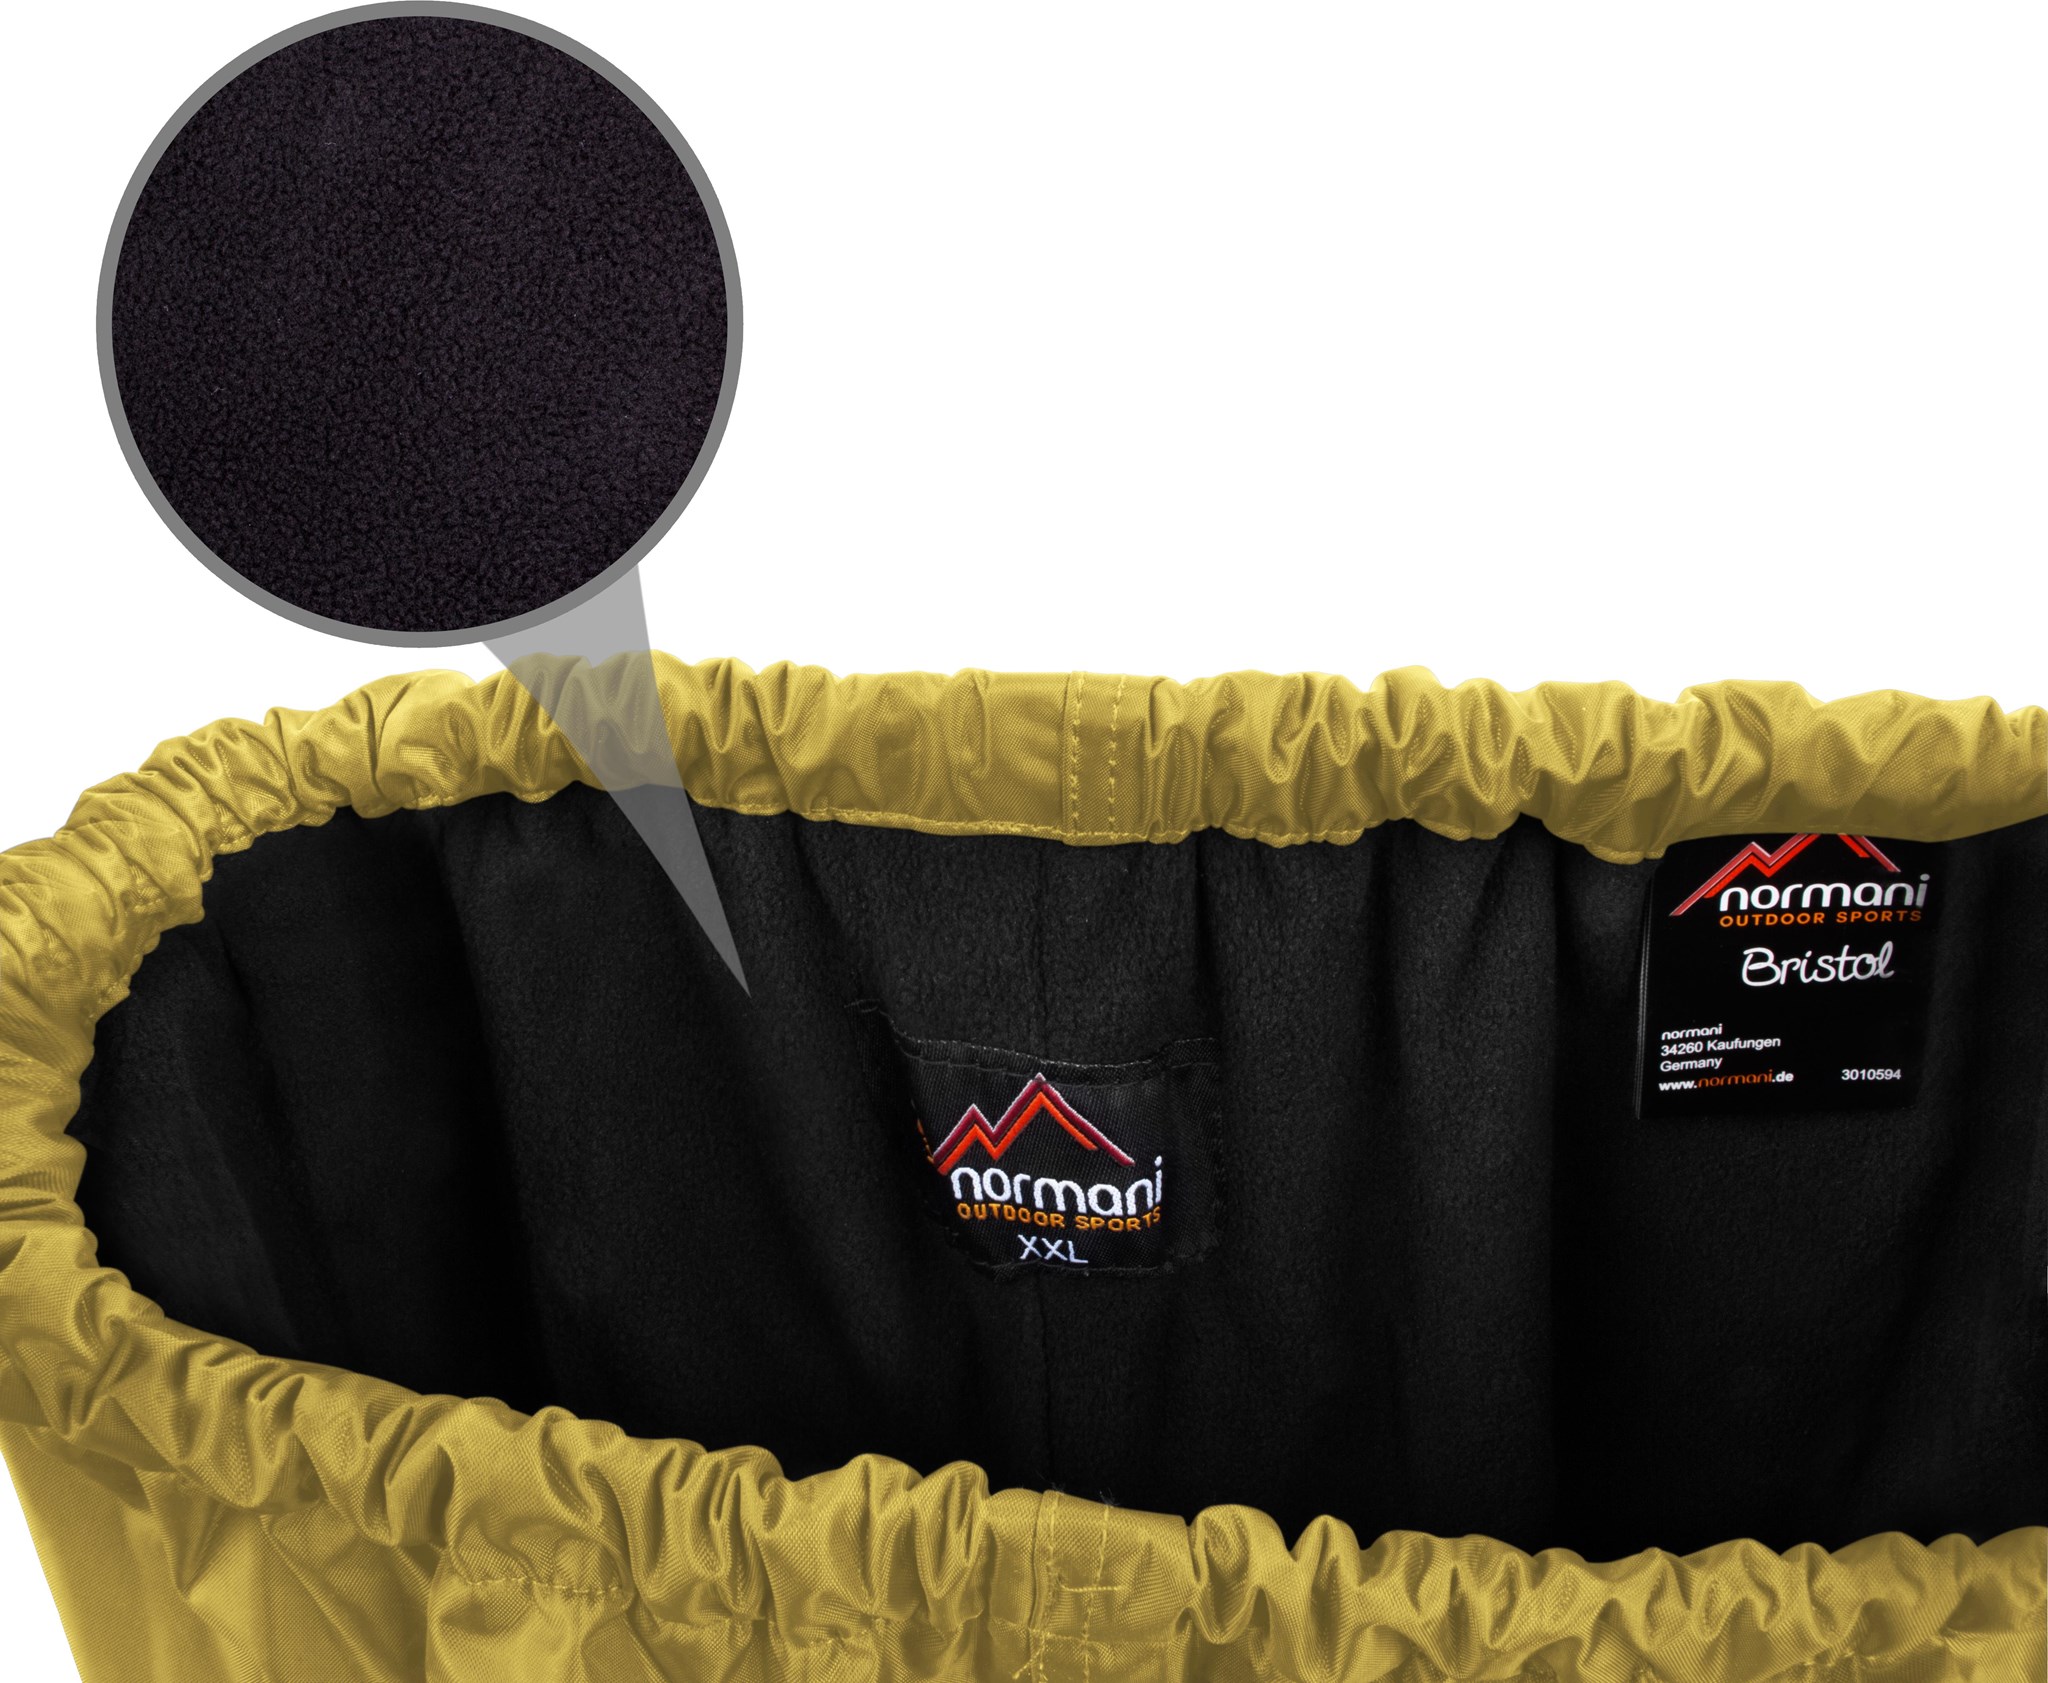 Joggen normani Herren Thermounterhose mit Quick-Dry-Funktionsmaterial Funktionswäsche für Ski Laufen und Fahrrad Fahren